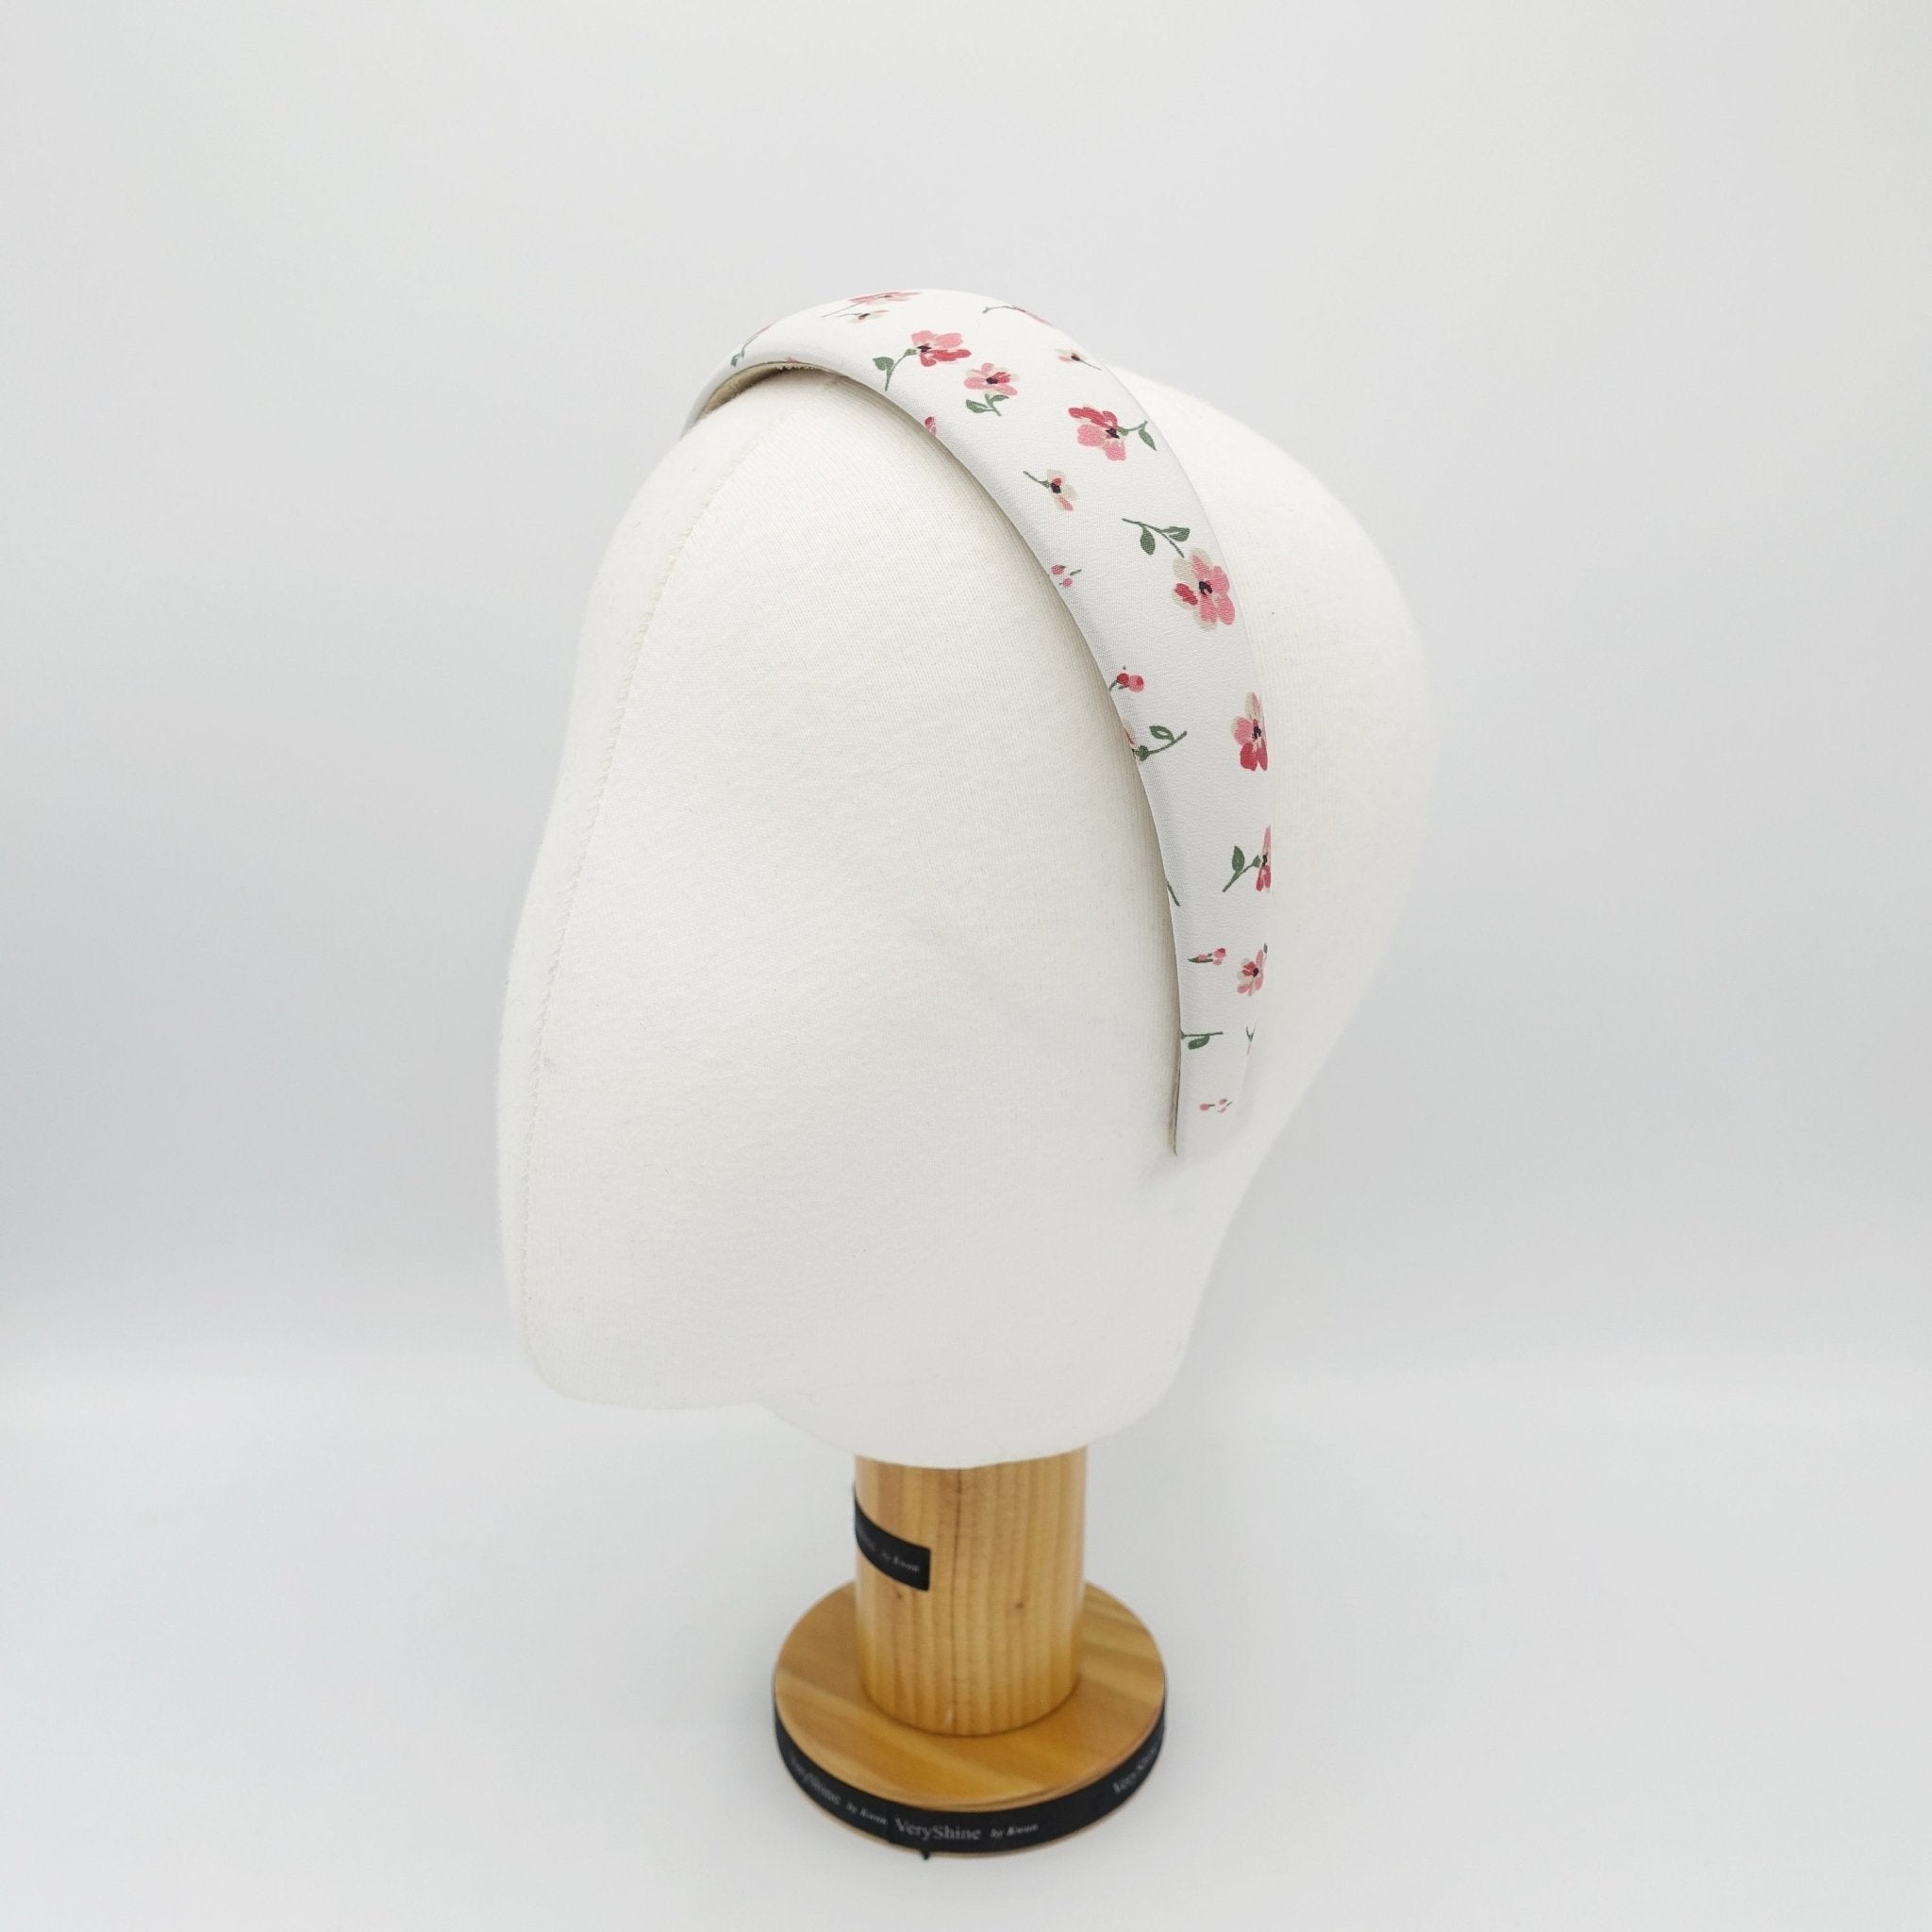 veryshine.com hairband/headband tiny floral padded headband flower print hairband hair accessory for women